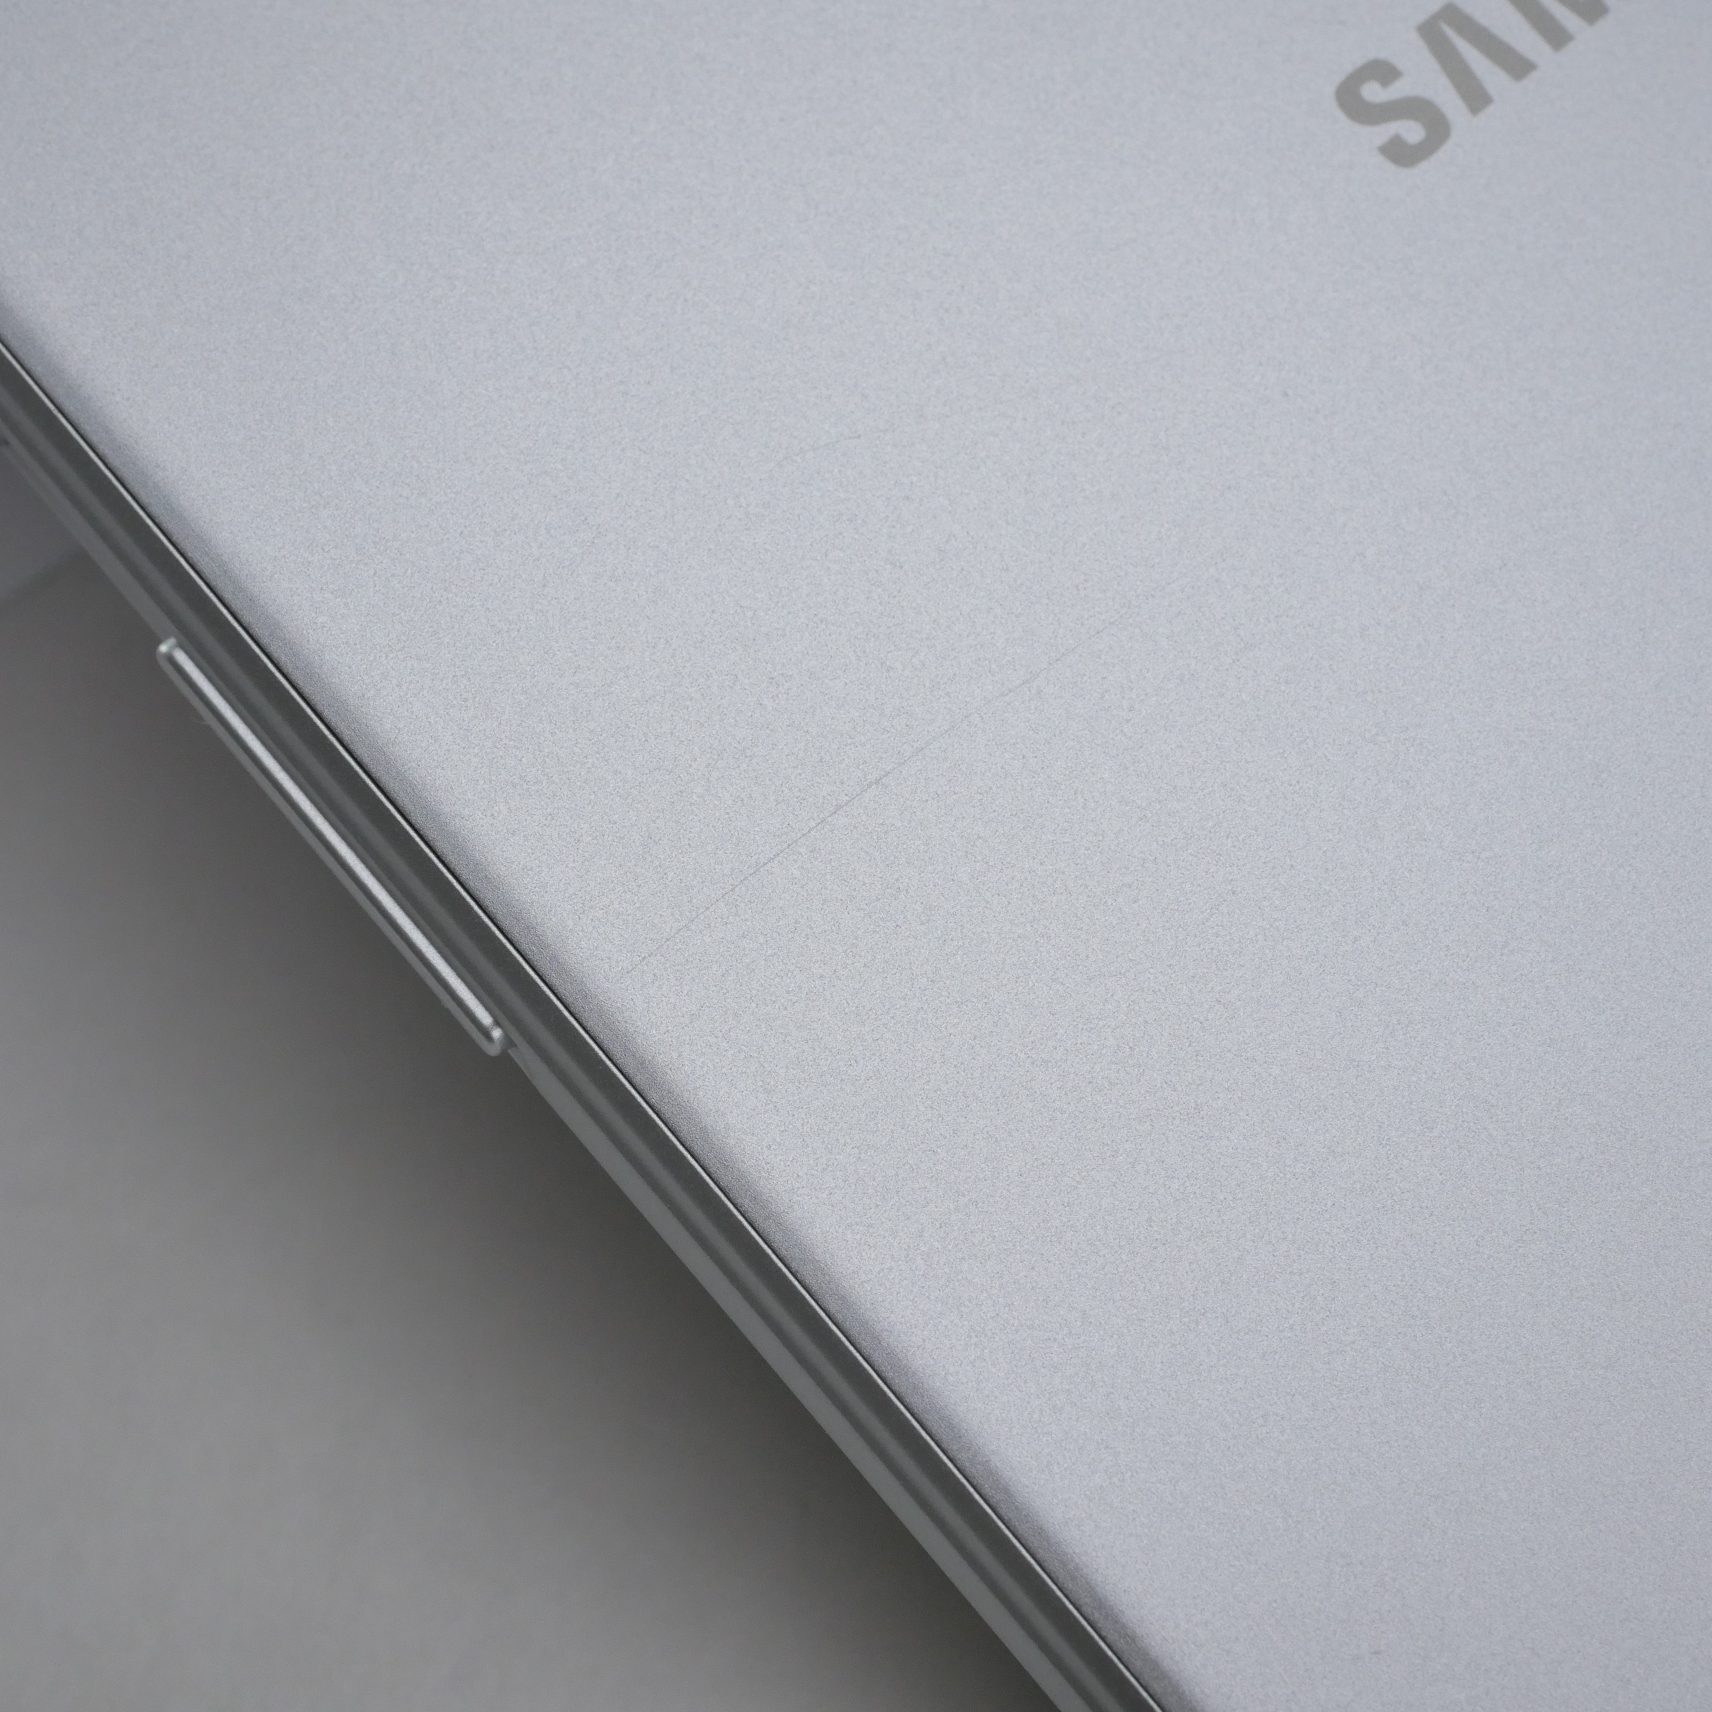 Samsung Galaxy Tab A (2019) SM-T290 32GB, Wi-Fi, 8 in - Silver - SM-T290NZSAXAR